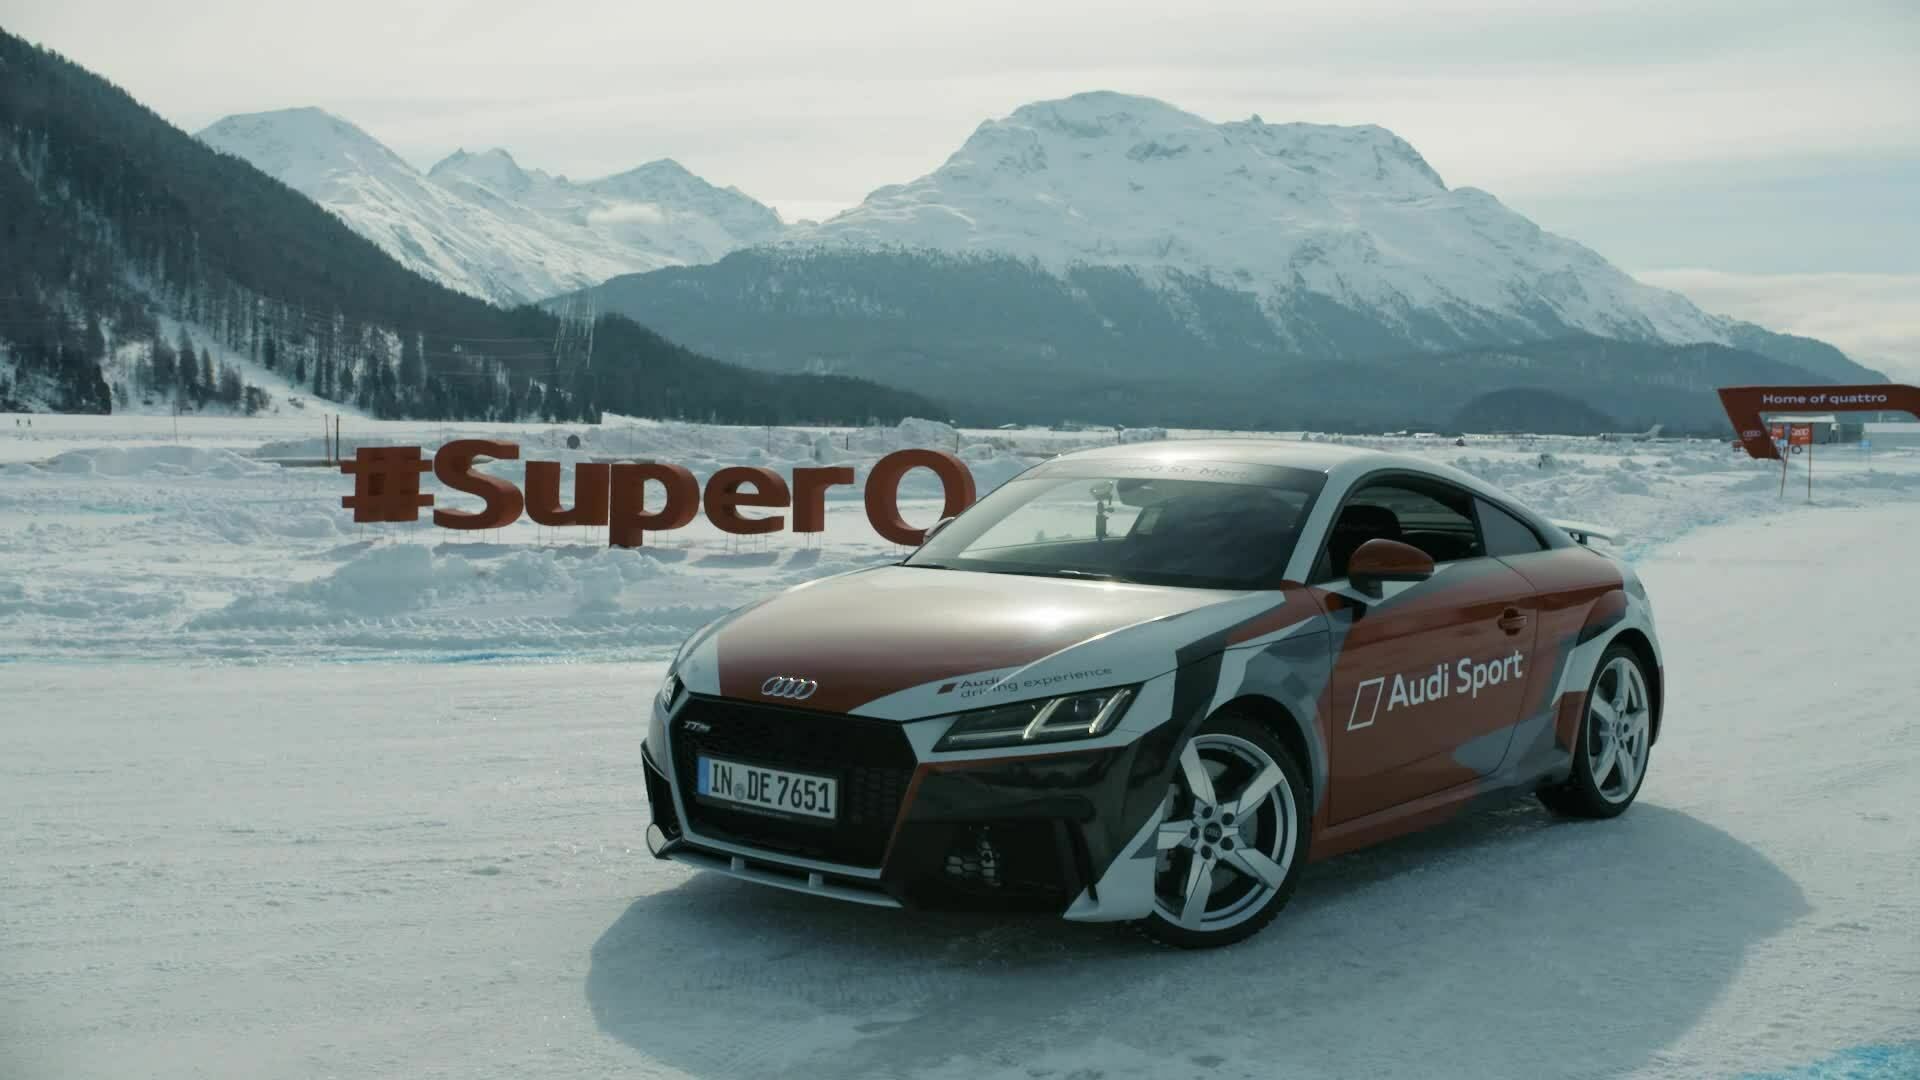 Ski-WM in St. Moritz: Audi #SuperQ Highlights